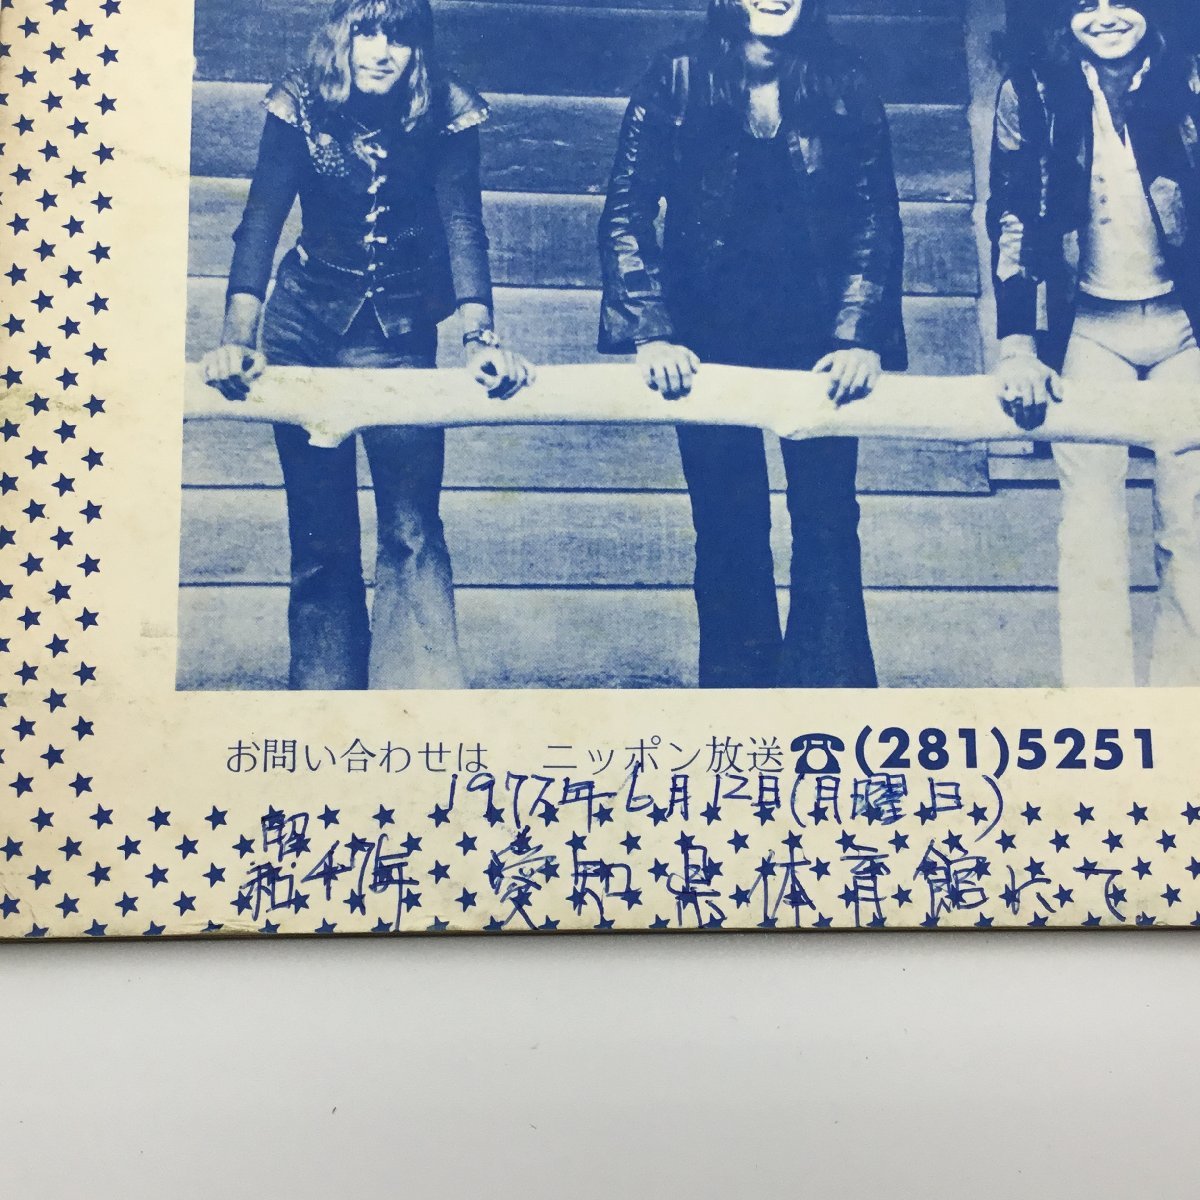  Tour проспект рекламная листовка имеется * Chicago Япония ..0 проспект CHICAGO 1972 год 